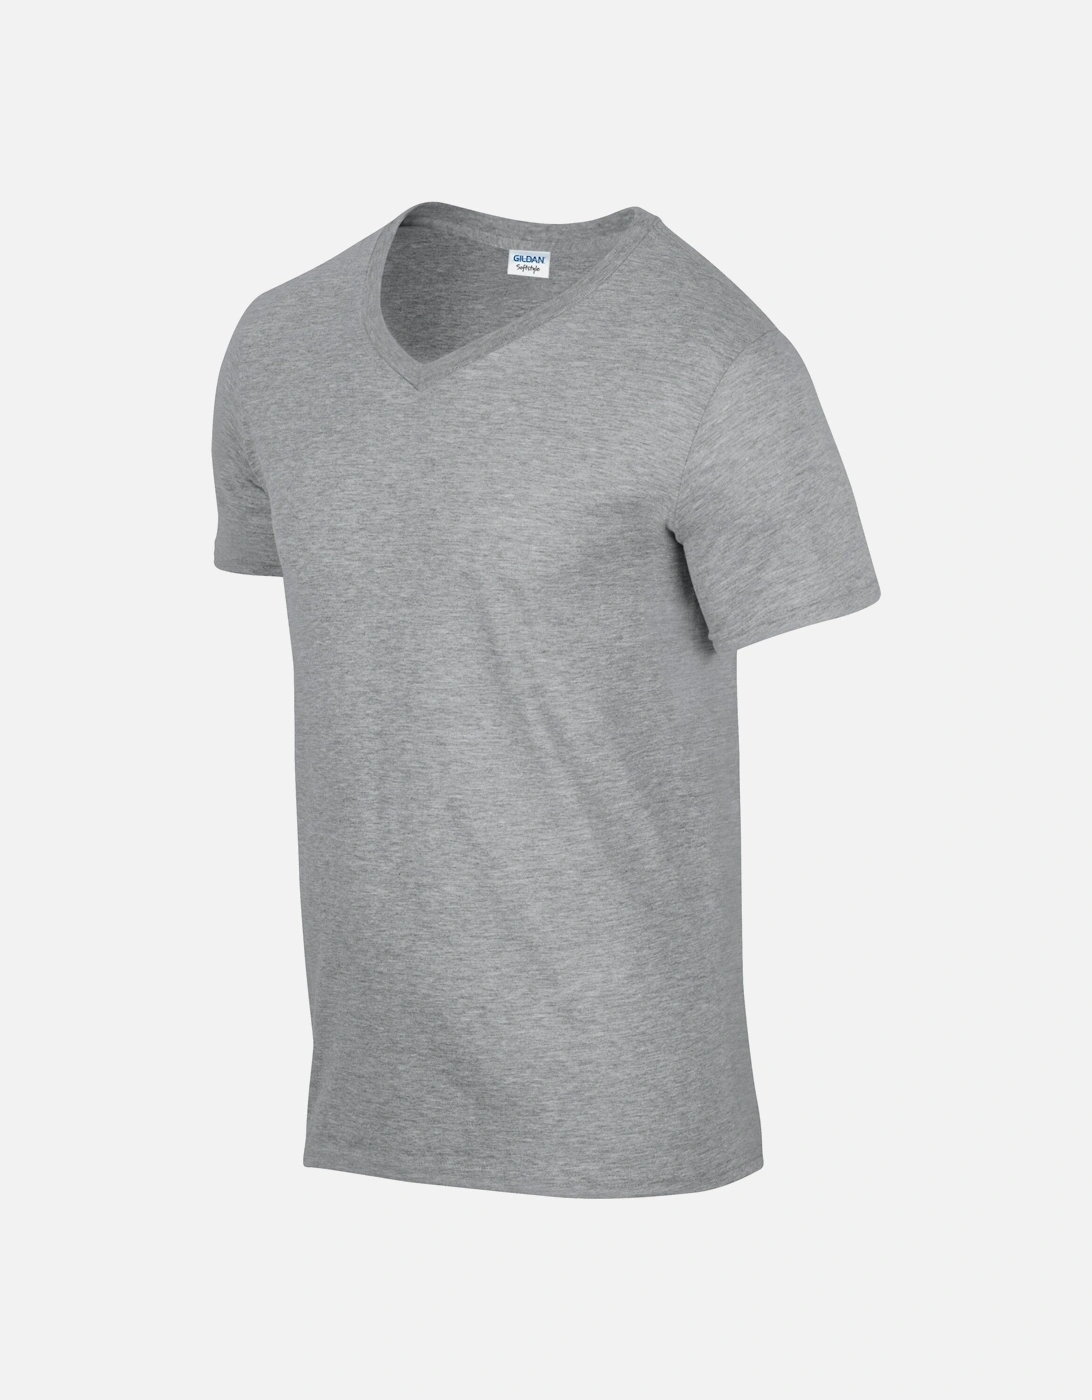 Unisex Adult Softstyle V Neck T-Shirt